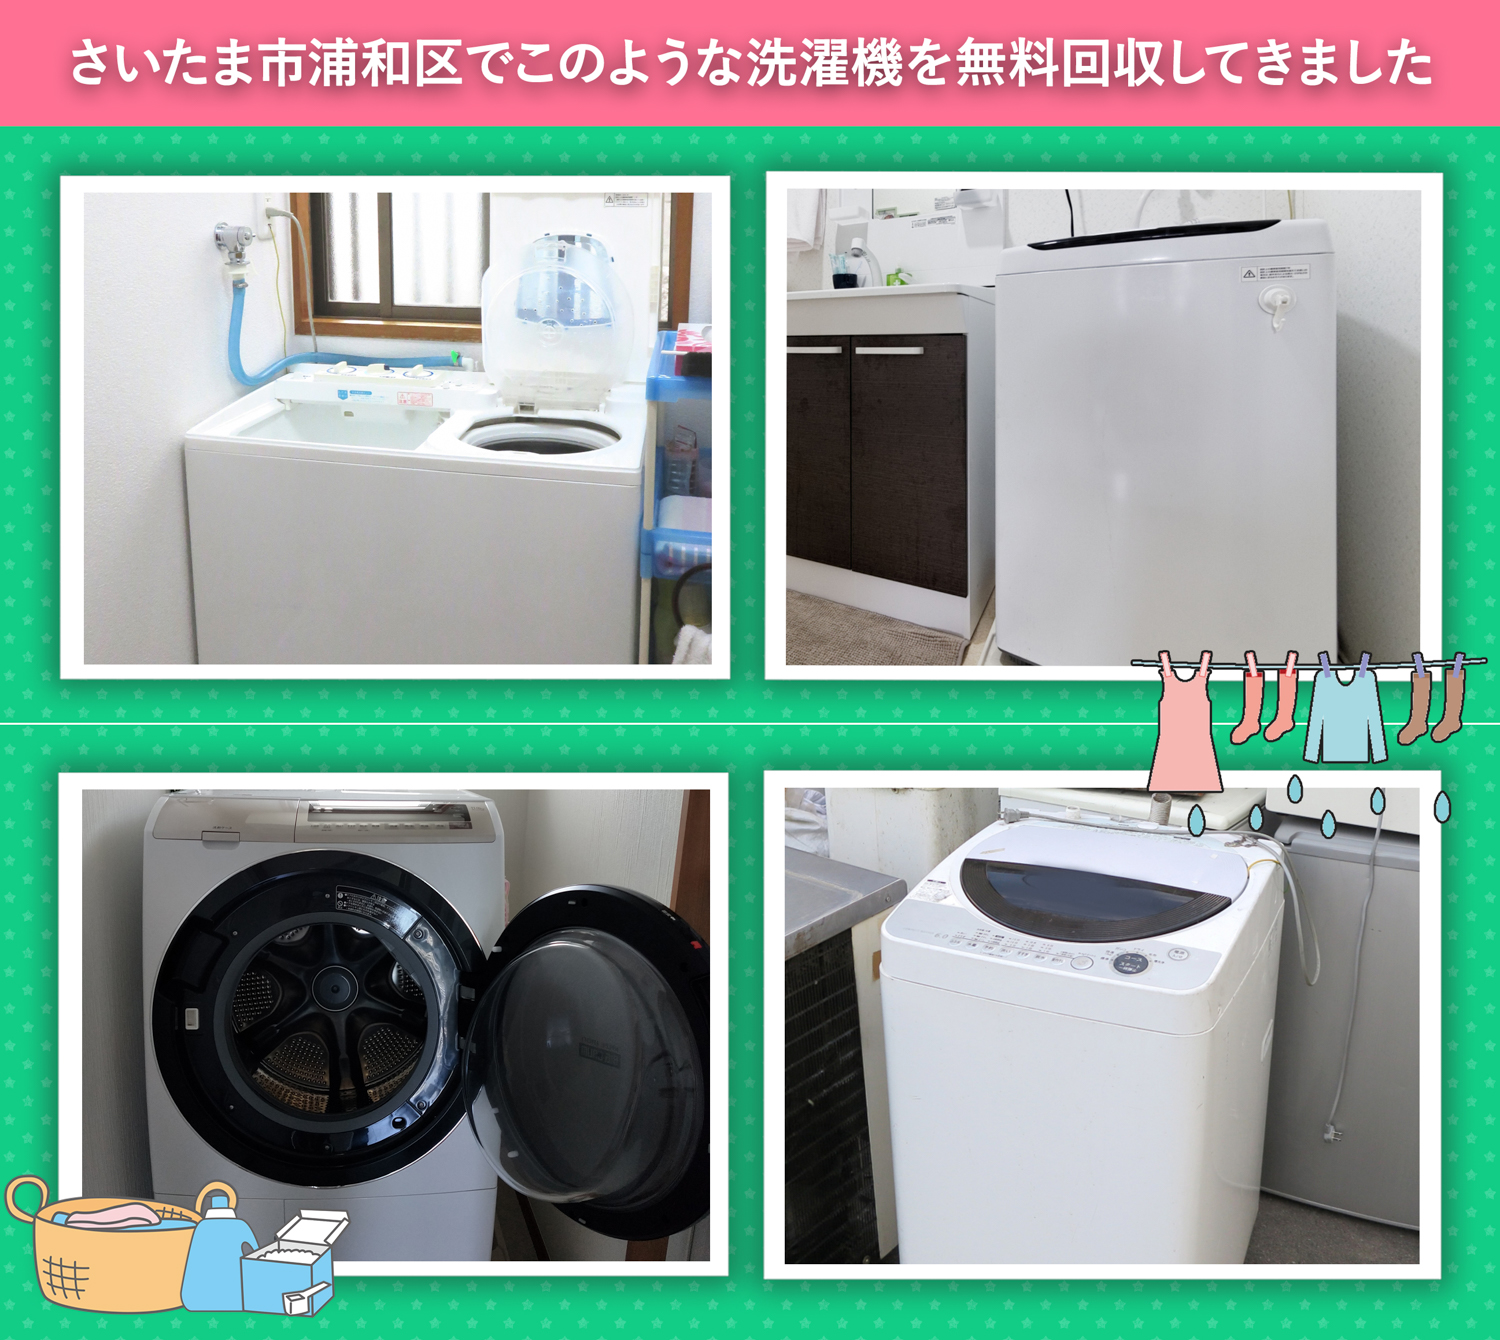 さいたま市浦和区でこのような洗濯機を無料回収してきました。